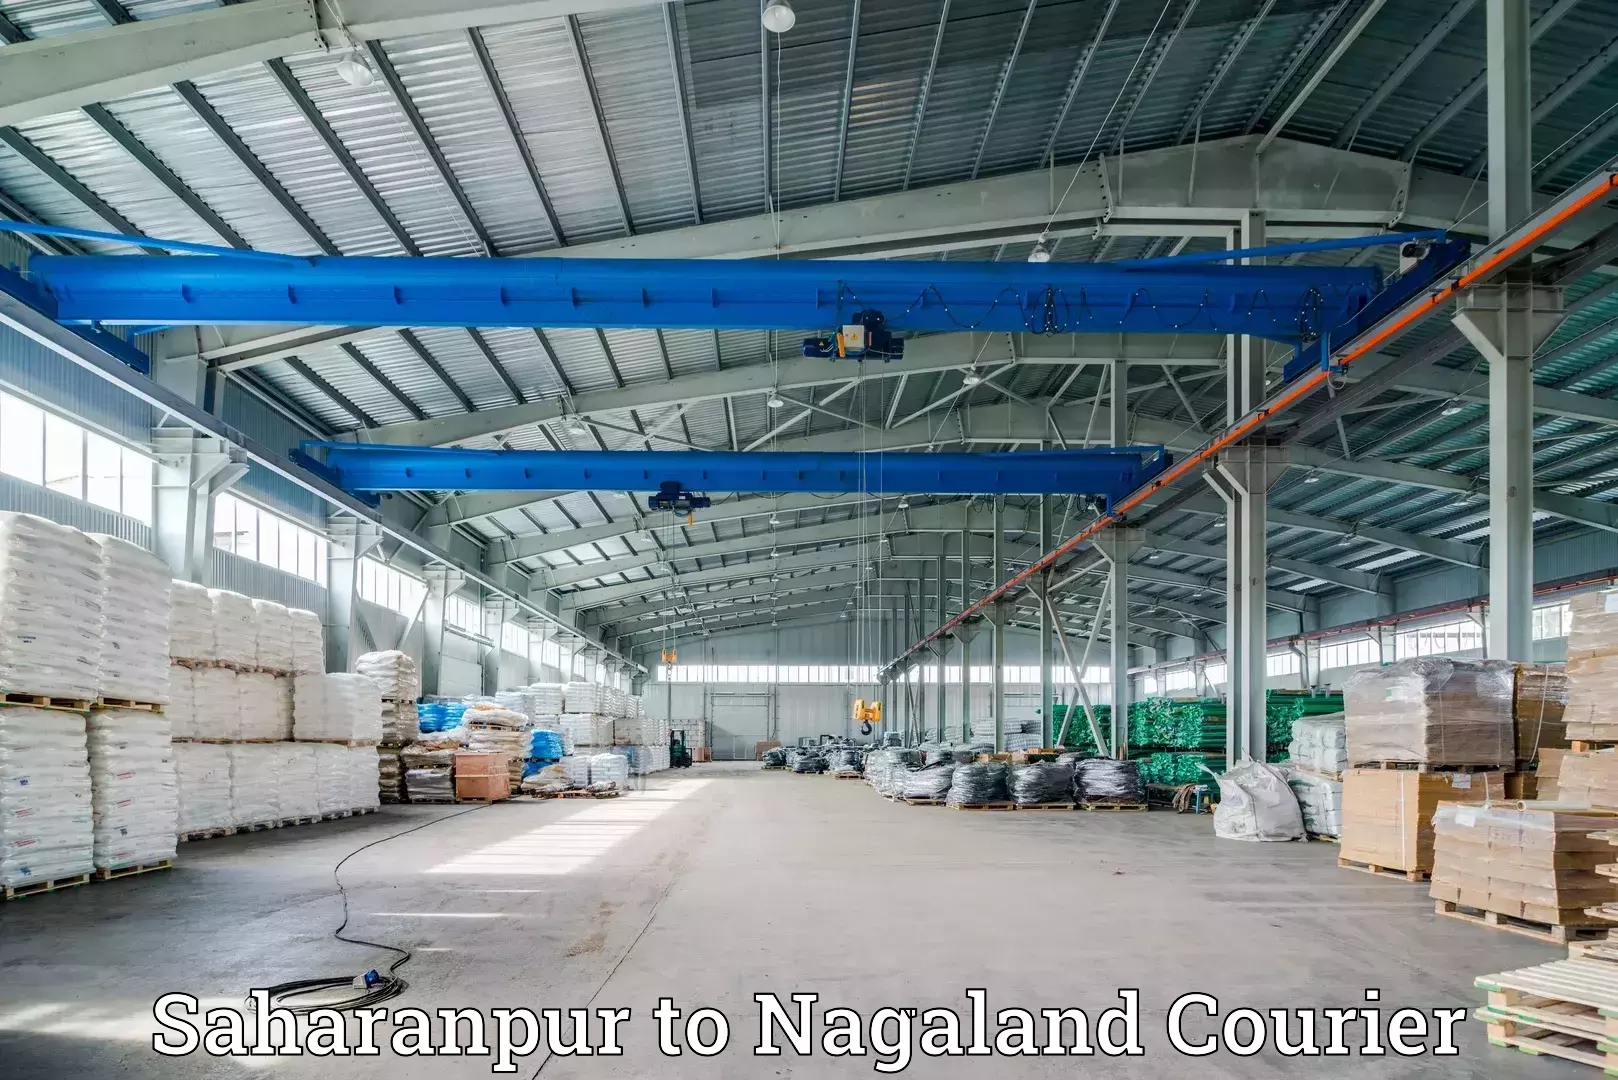 Express logistics service Saharanpur to Nagaland